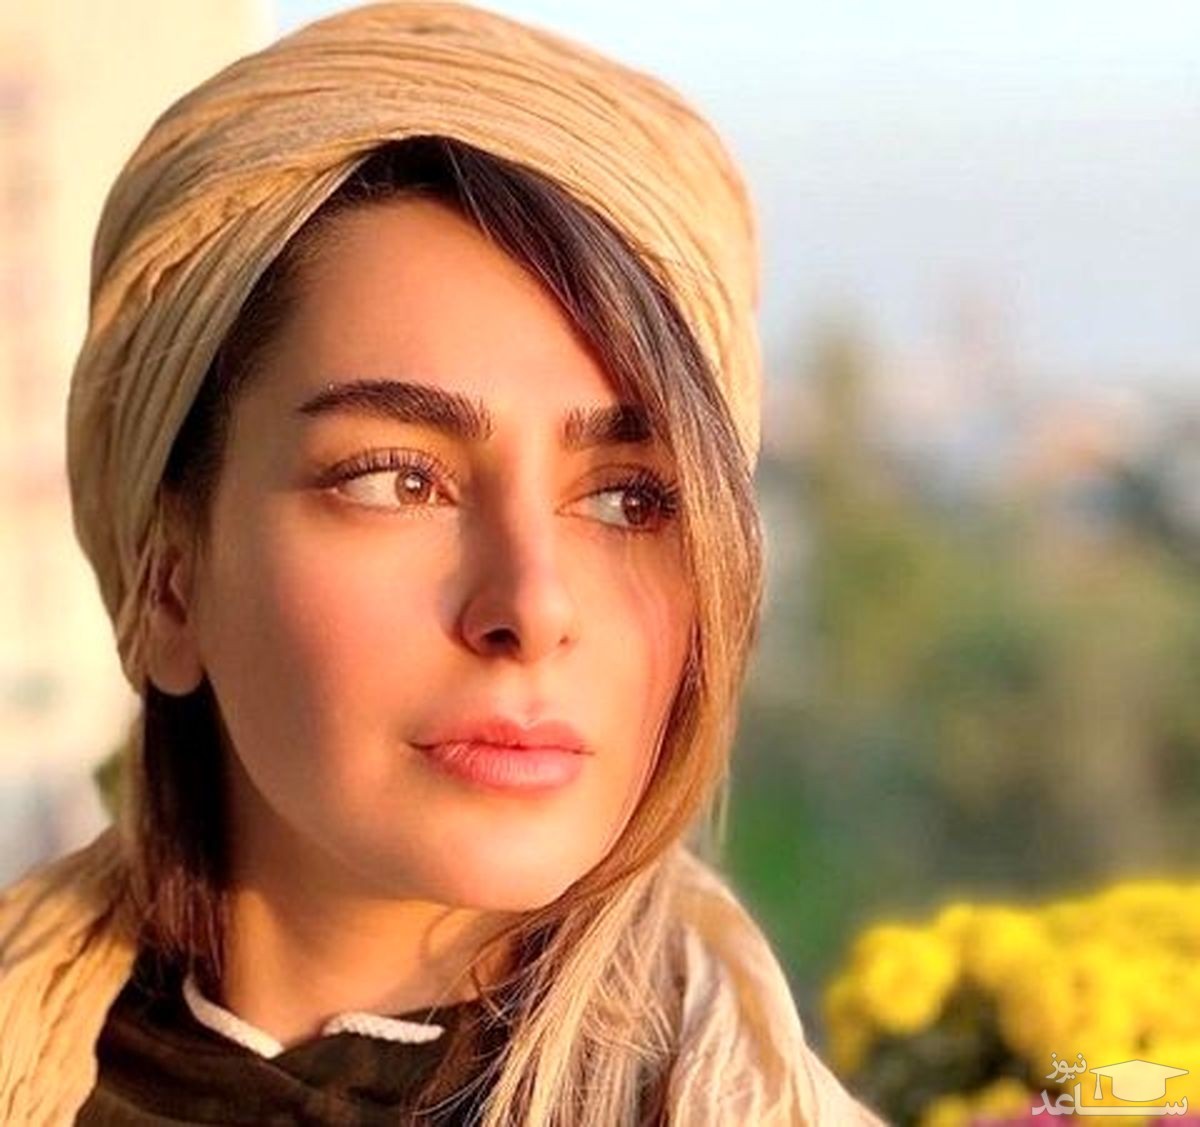 سمانه پاکدل، همسر بازیگر مشهور بر فراز آسمان